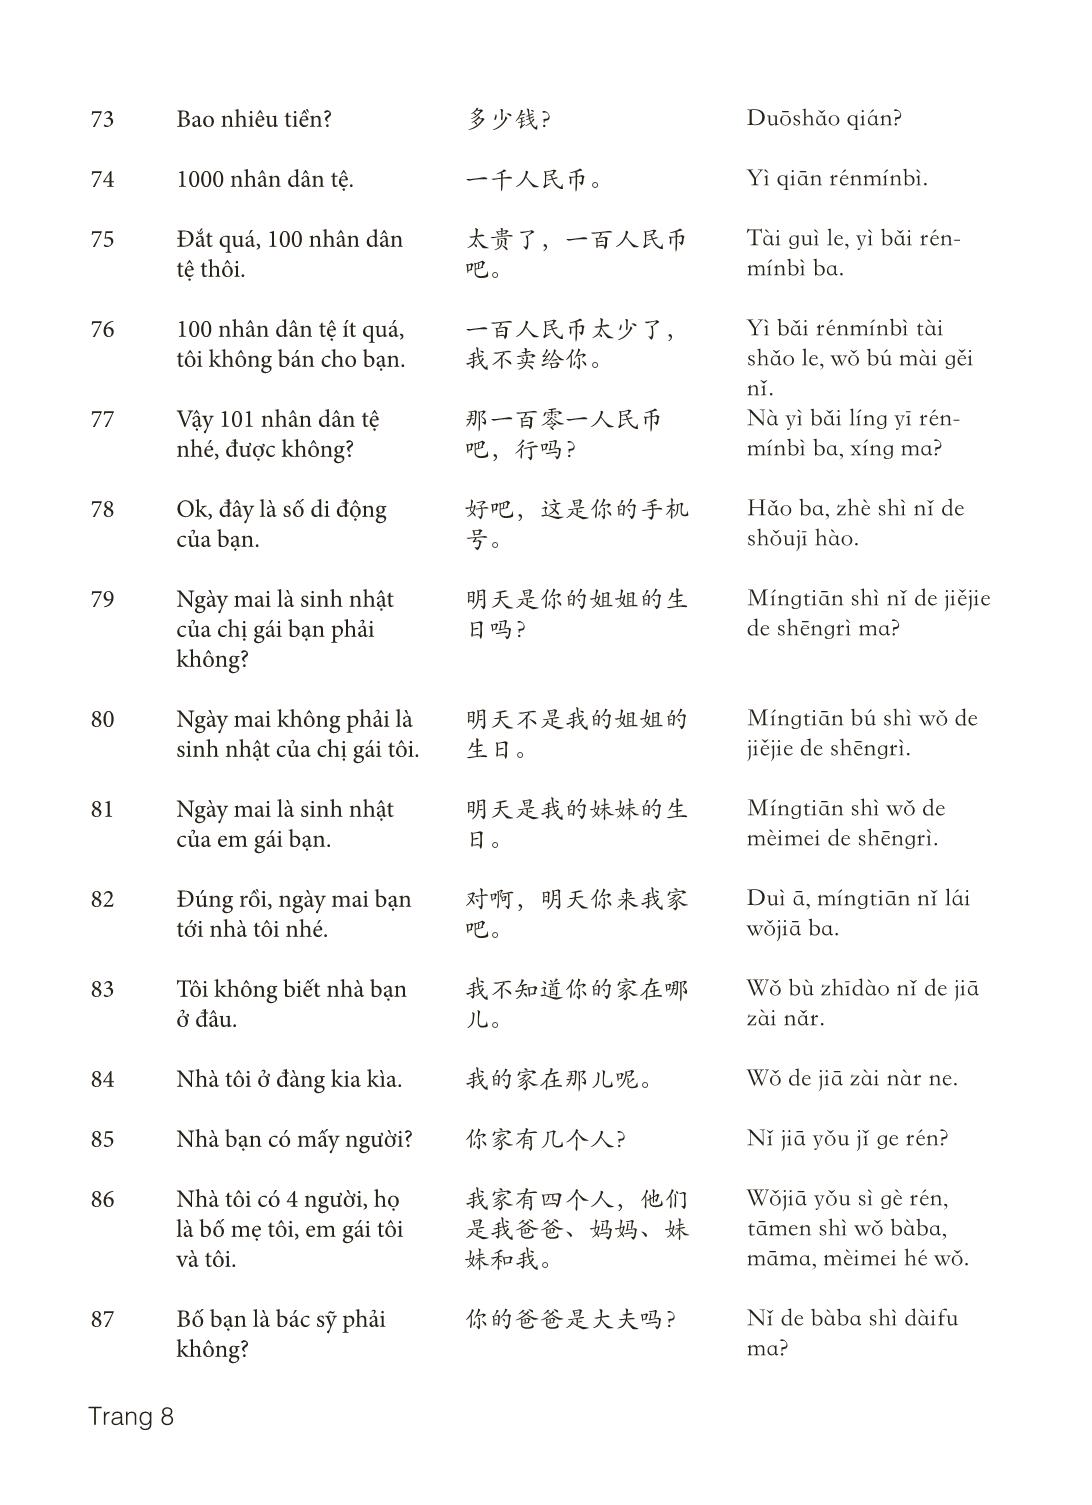 3000 Câu đàm thoại tiếng Hoa - Phần 2 trang 8